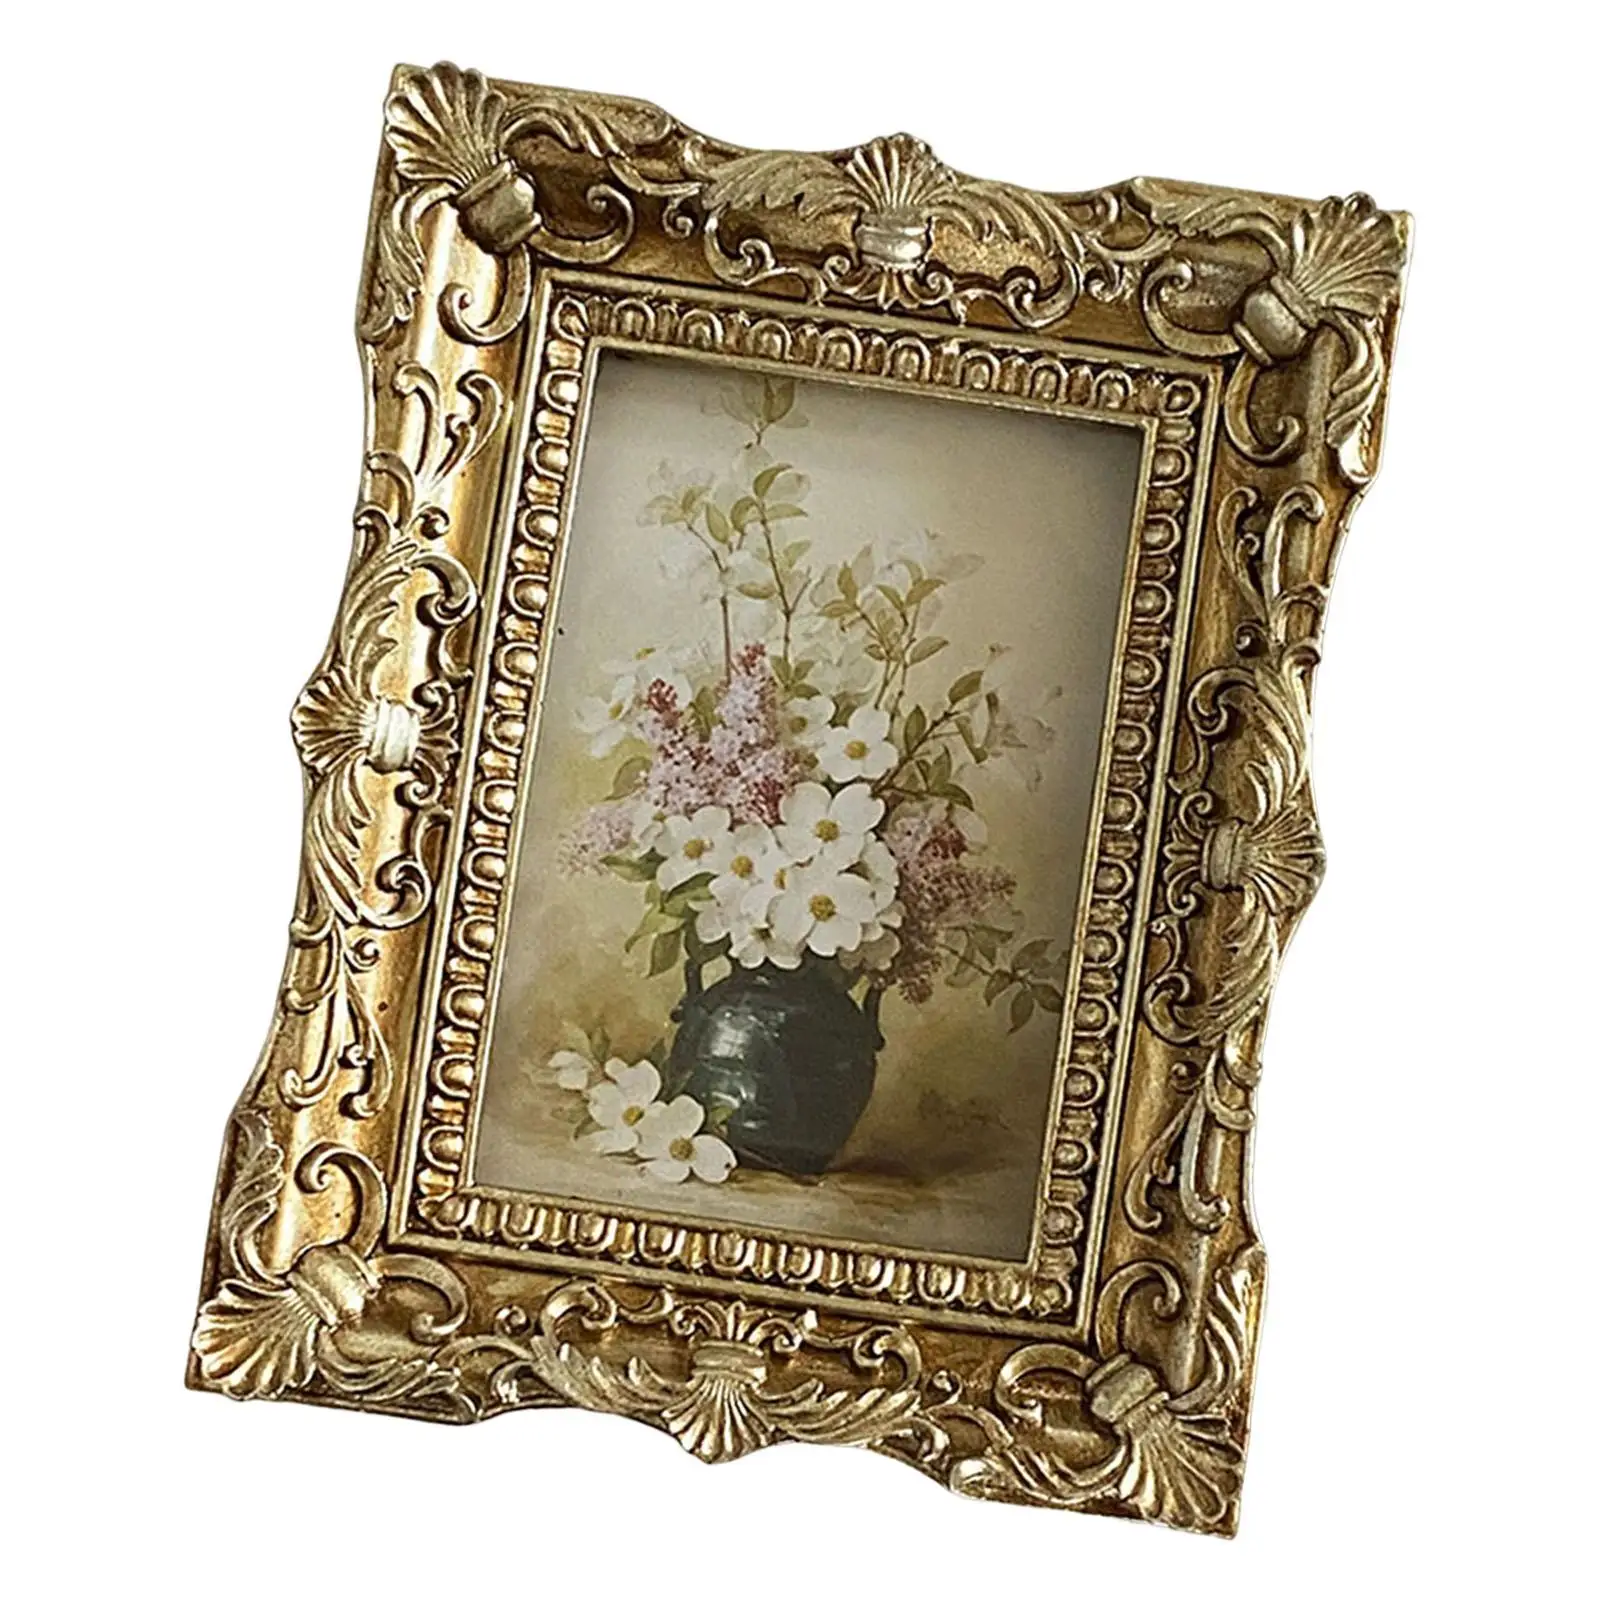 Vintage Style Photo Frame Picture Holder Desktop Picture Frame Ornate Tabletop Hanging for Home Wedding Bedroom Decor Gift